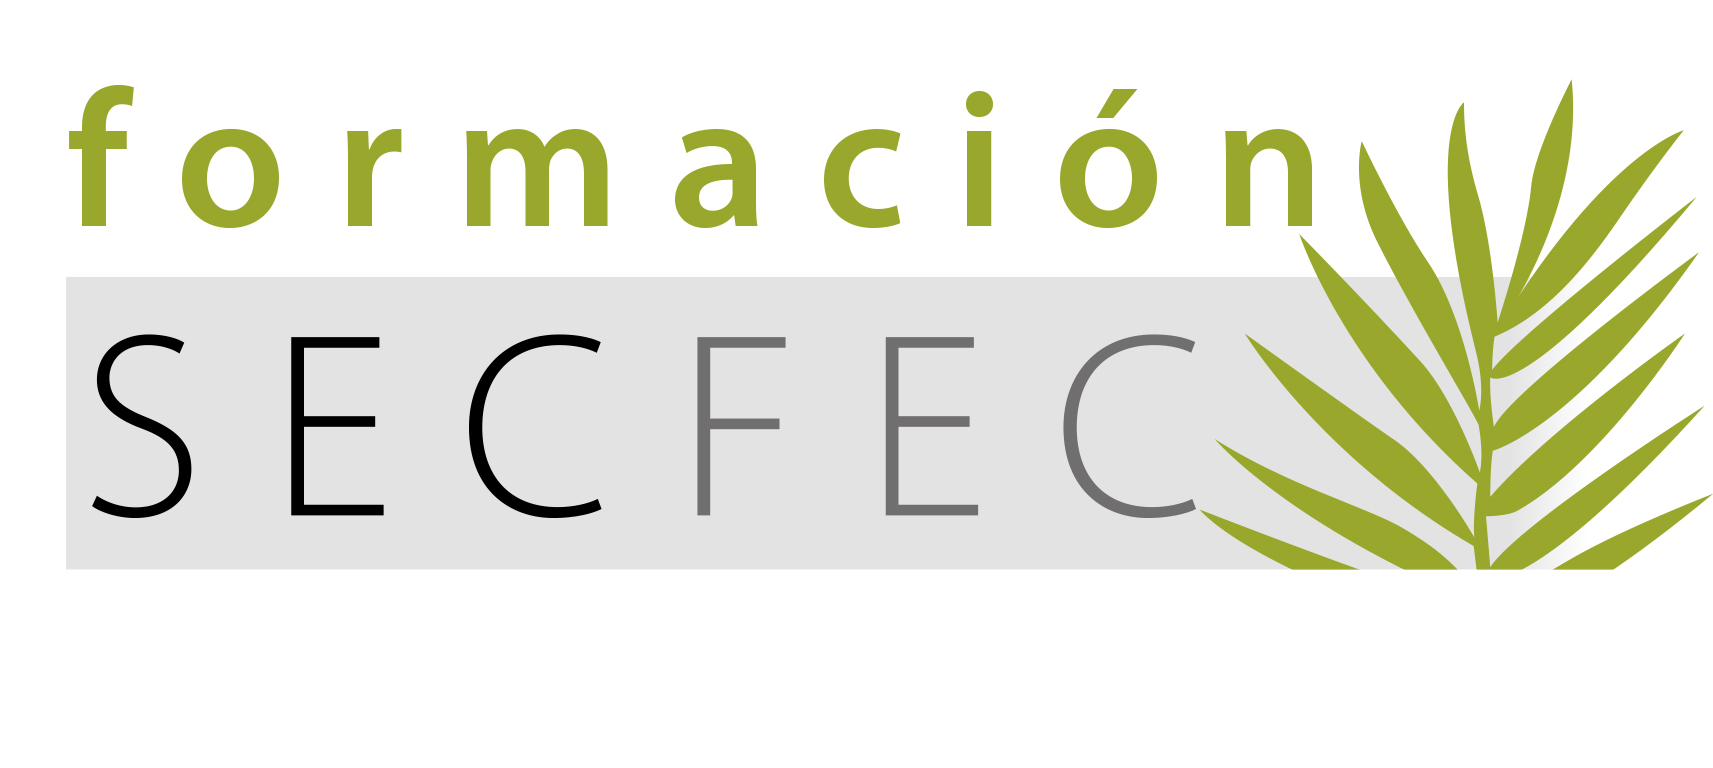 logo_secfec_formacion